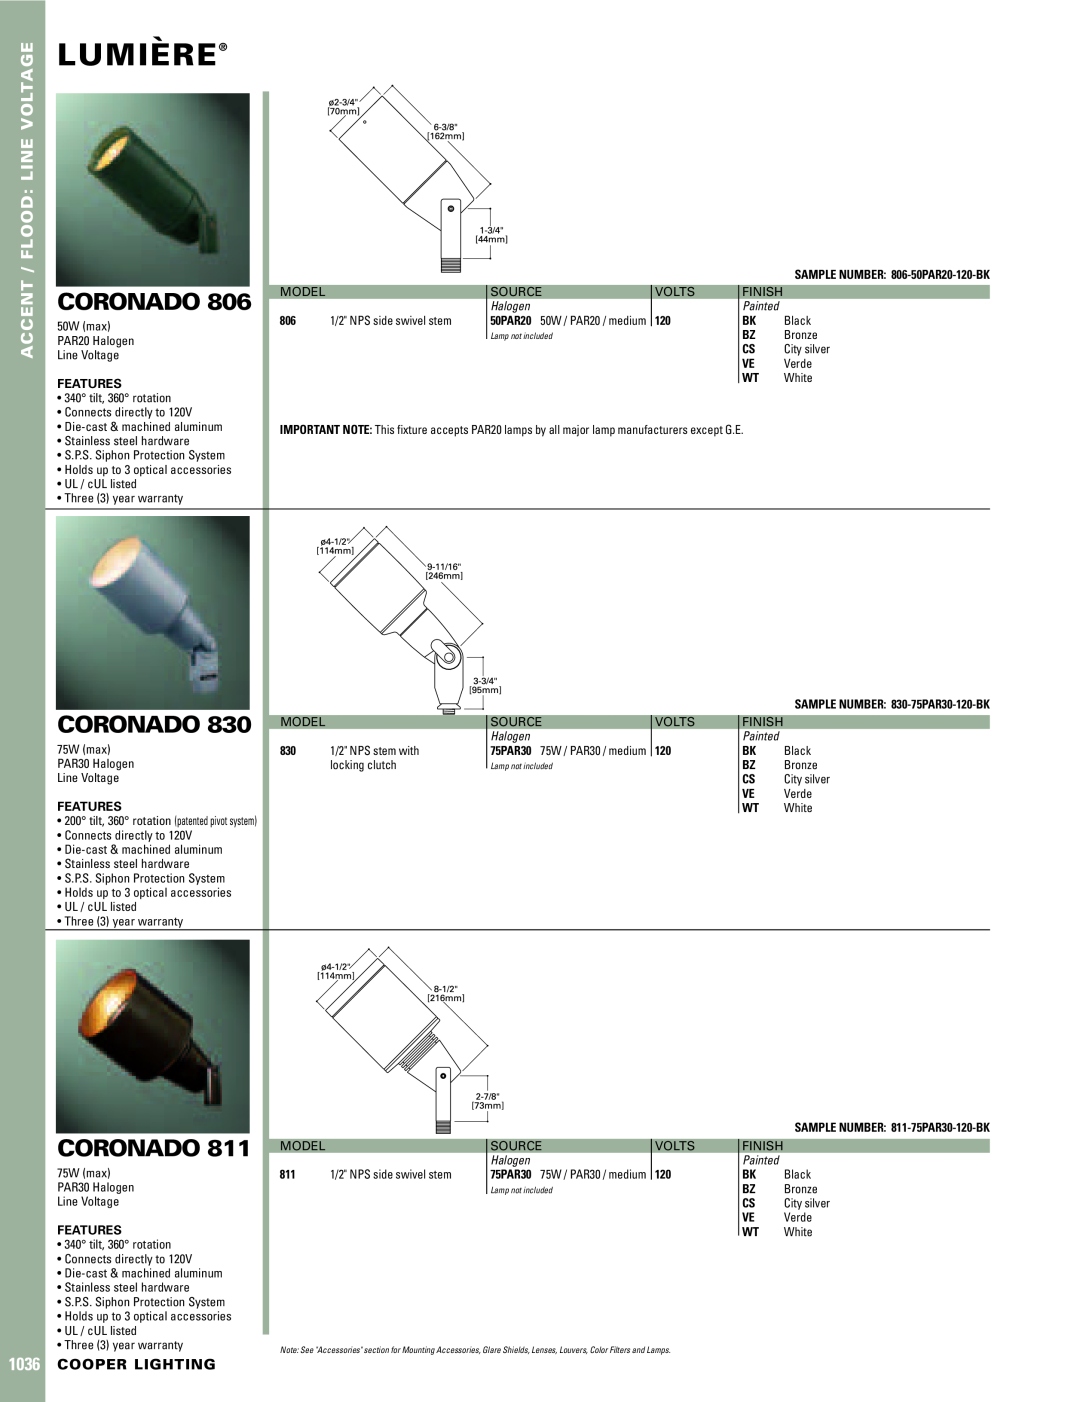 Cooper Lighting 830 warranty Lumiere`, Coronado, Accent / Flood Line Voltage, Cooper Lighting, Halogen, Painted, Features 